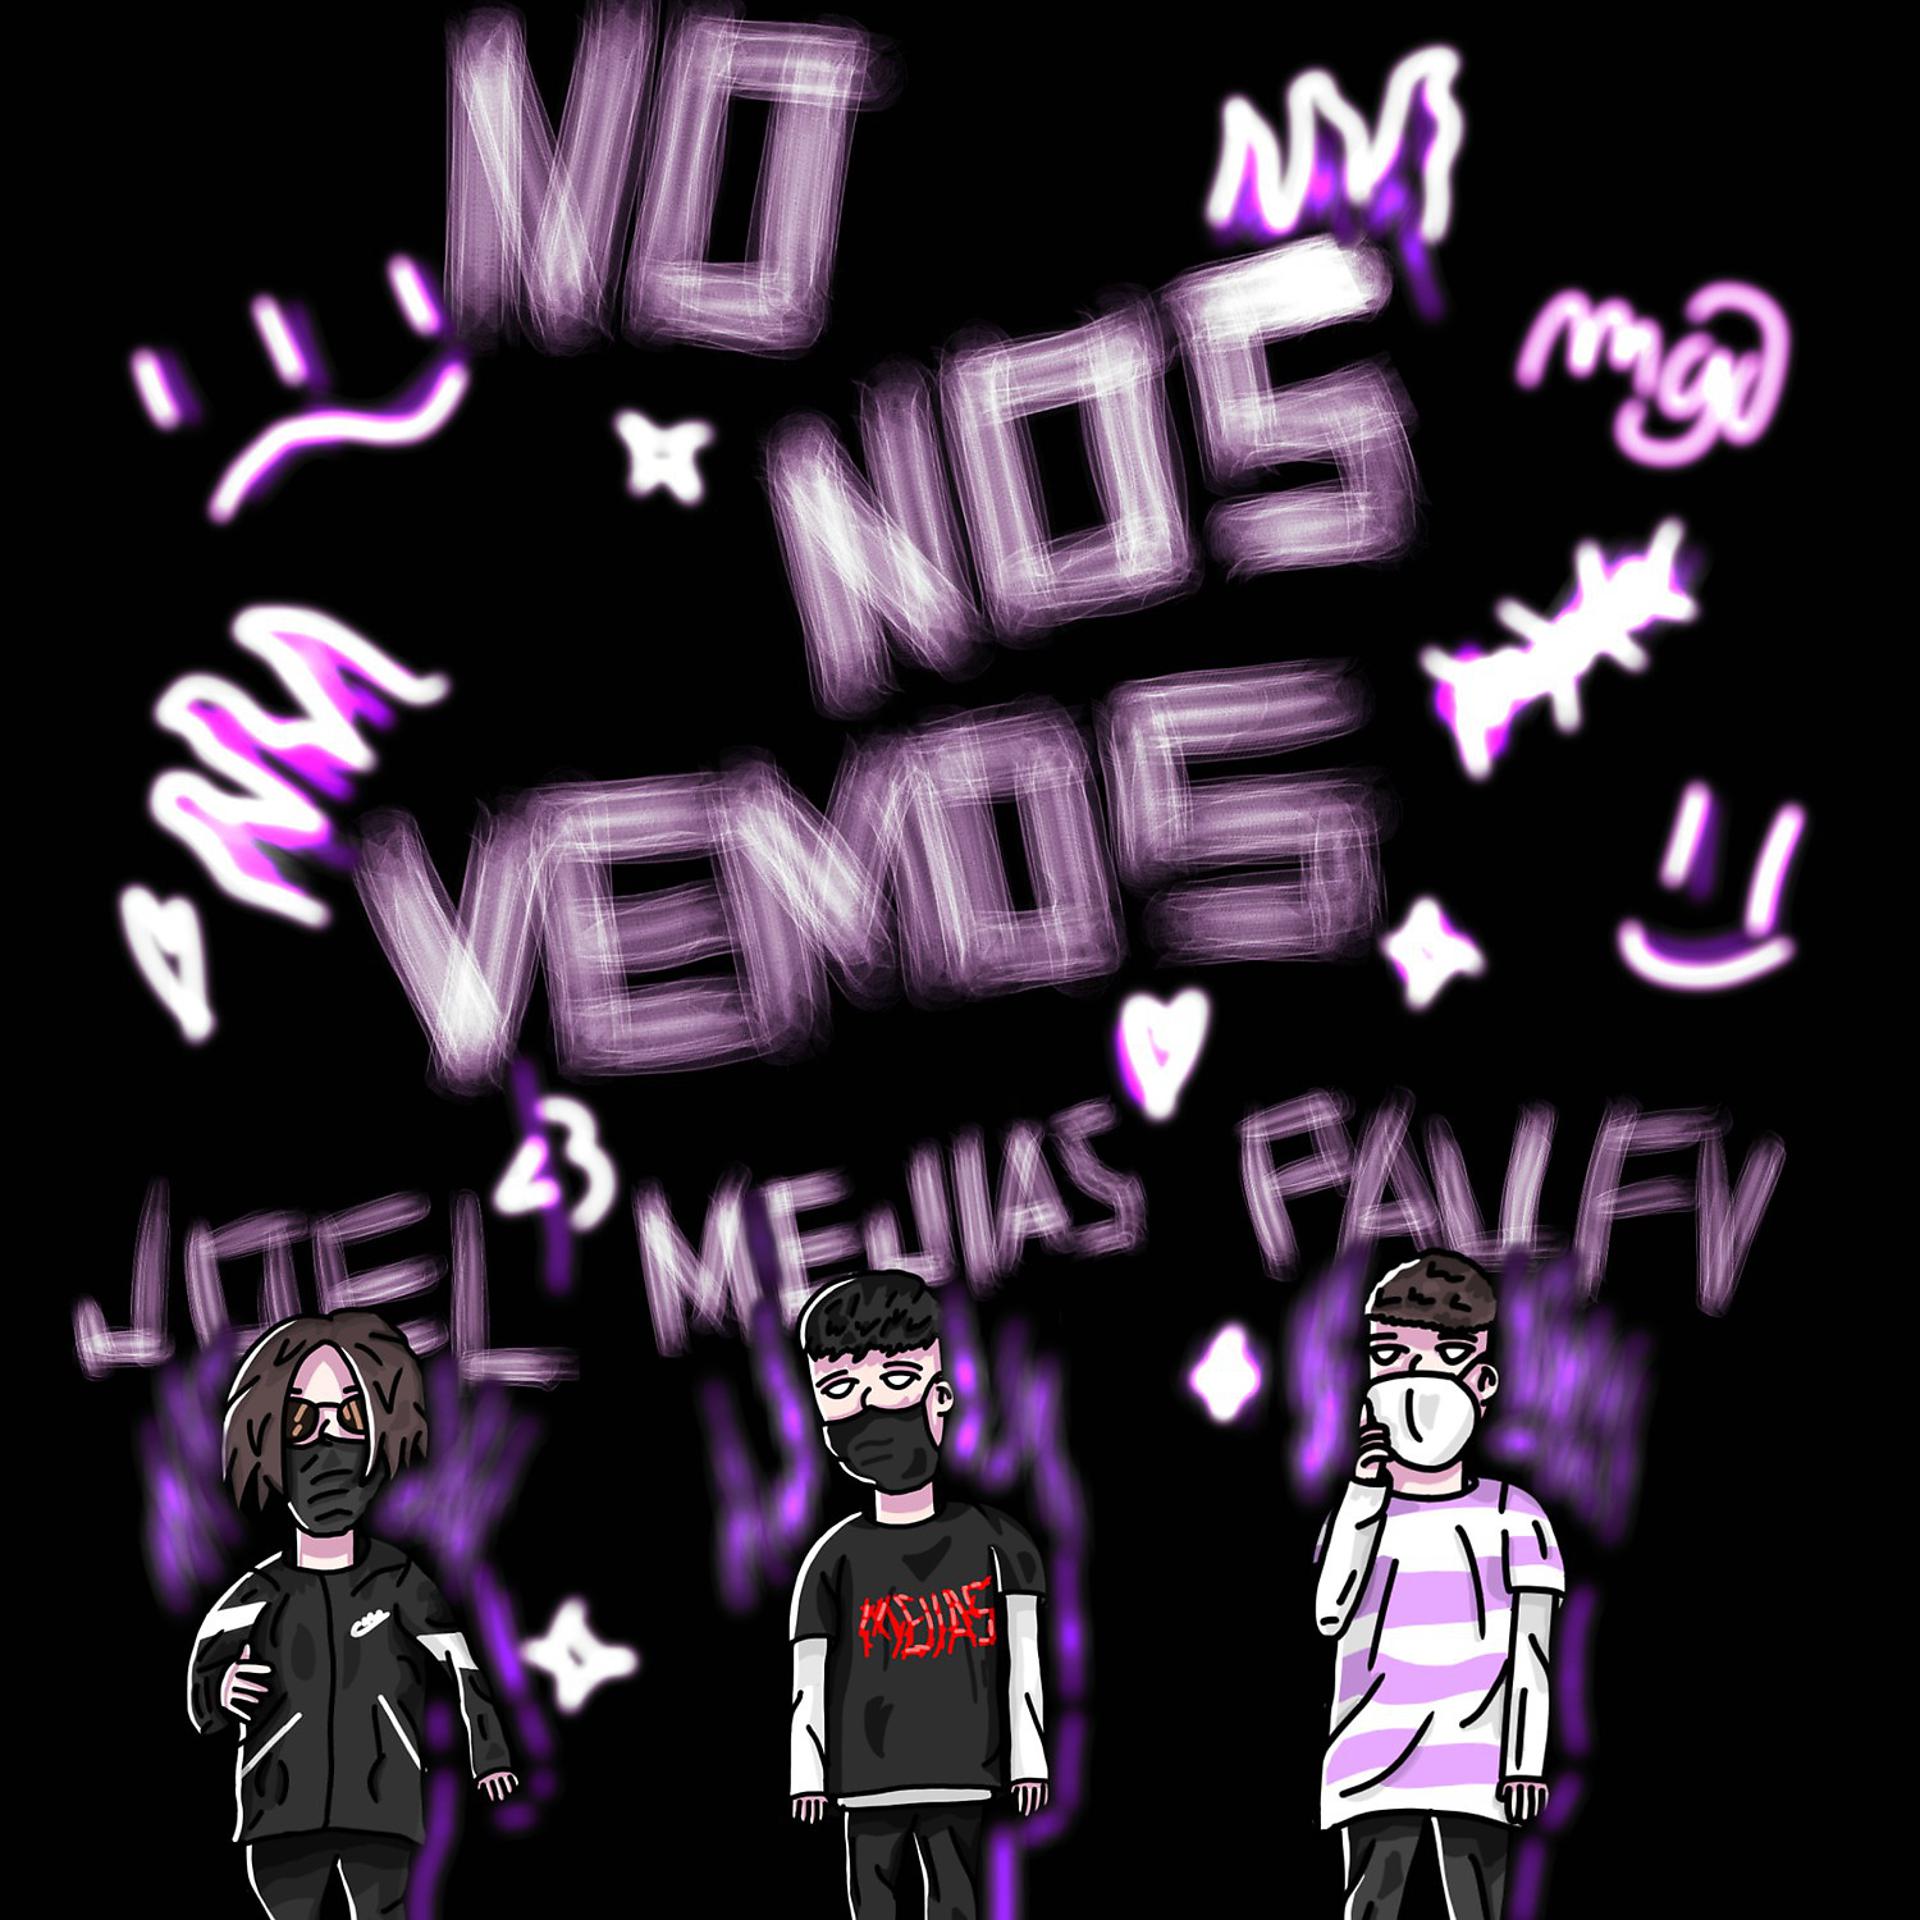 Постер альбома No Nos Vemos